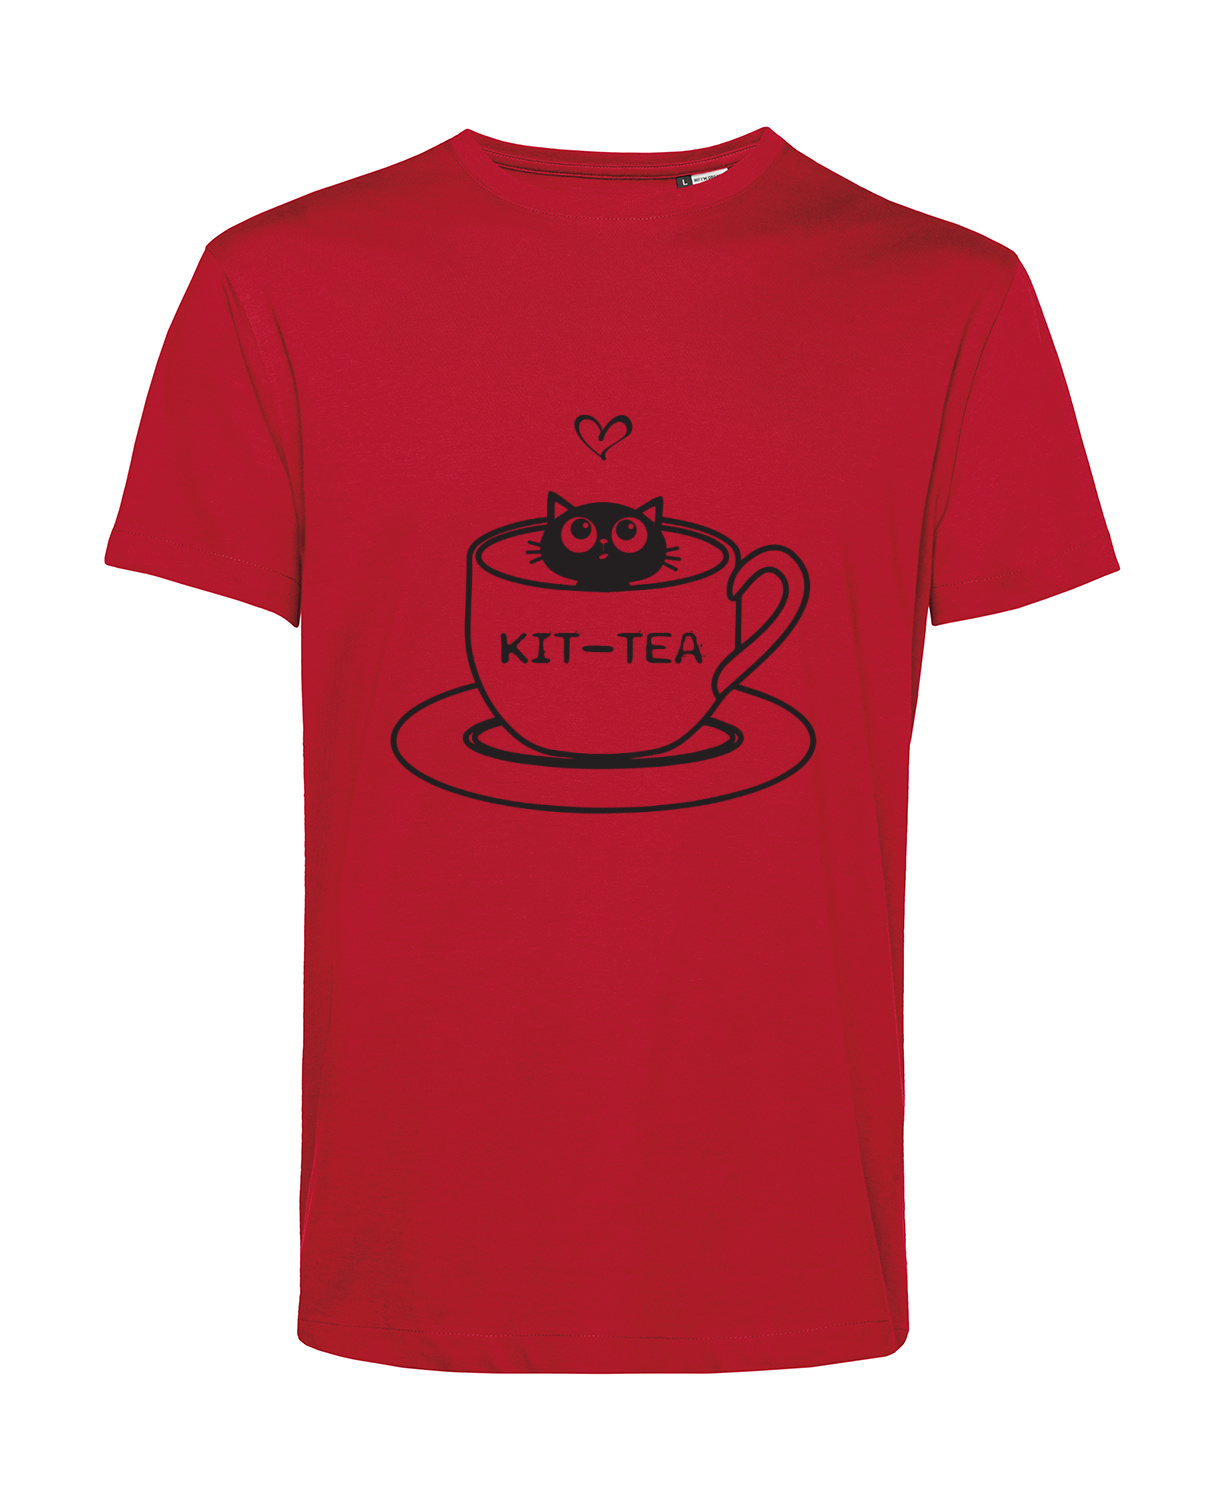 Nachhaltiges T-Shirt Herren Katzen Kit-Tea